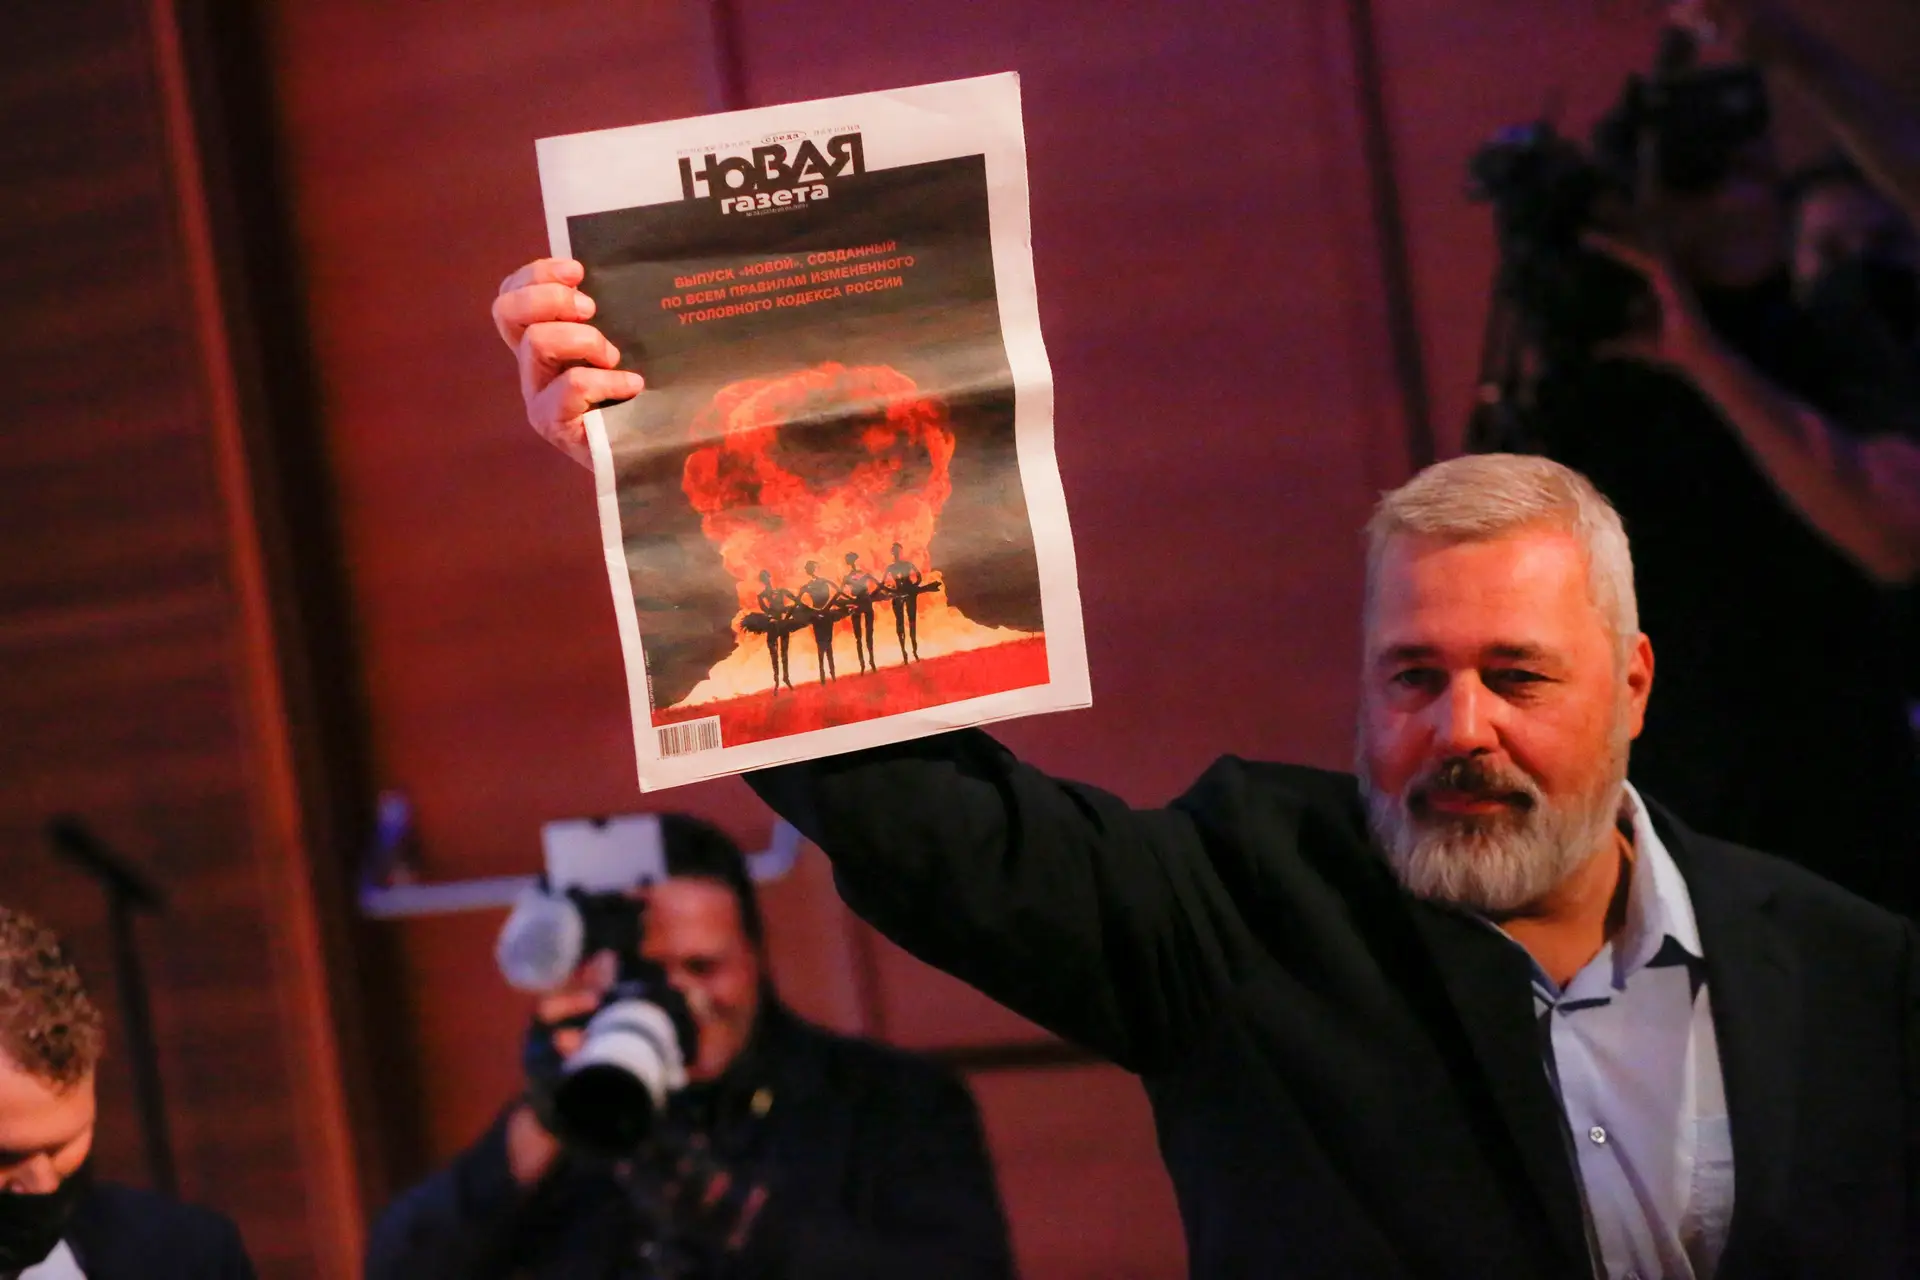 Justiça russa anula licença de revista lançada por jornal crítico do Kremlin